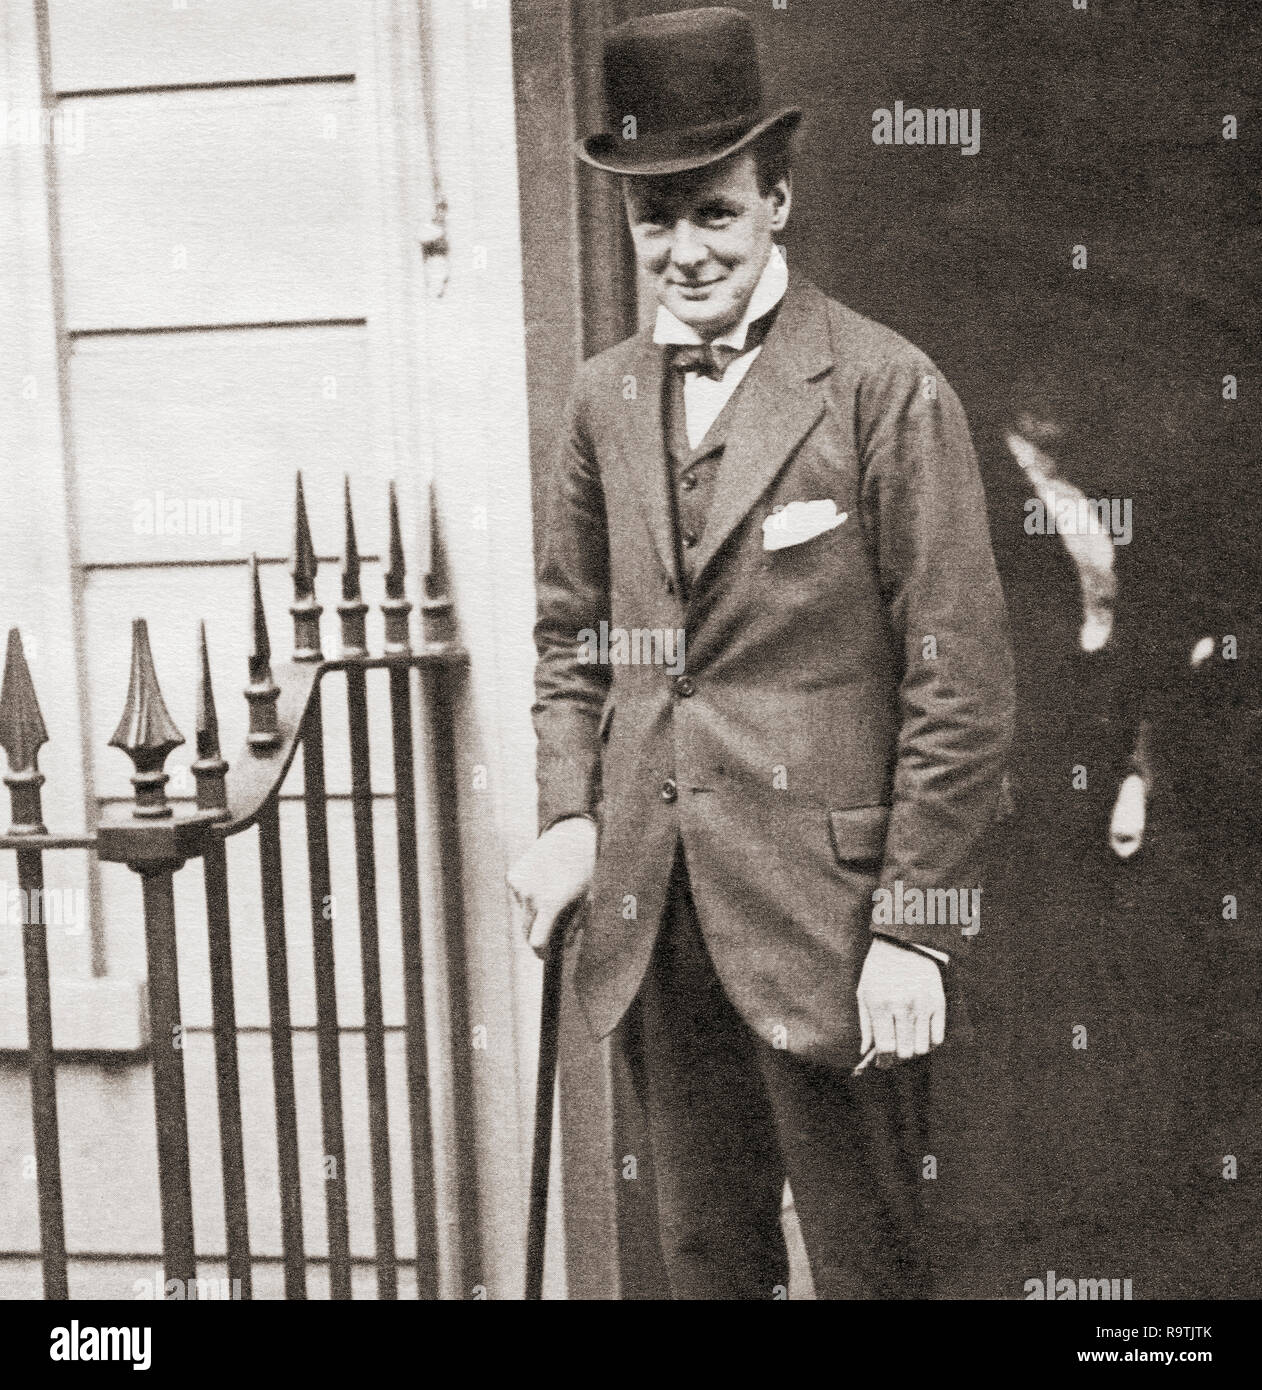 Winston Churchill hier 1908 an Nr. 10 Downing Street, London, England gesehen. Sir Winston Leonard Spencer-Churchill, 1874 - 1965. Britischer Politiker, Staatsmann, Offizier und Schriftsteller, der Premierminister des Vereinigten Königreichs von 1940 bis 1945 und erneut von 1951 bis 1955. Stockfoto